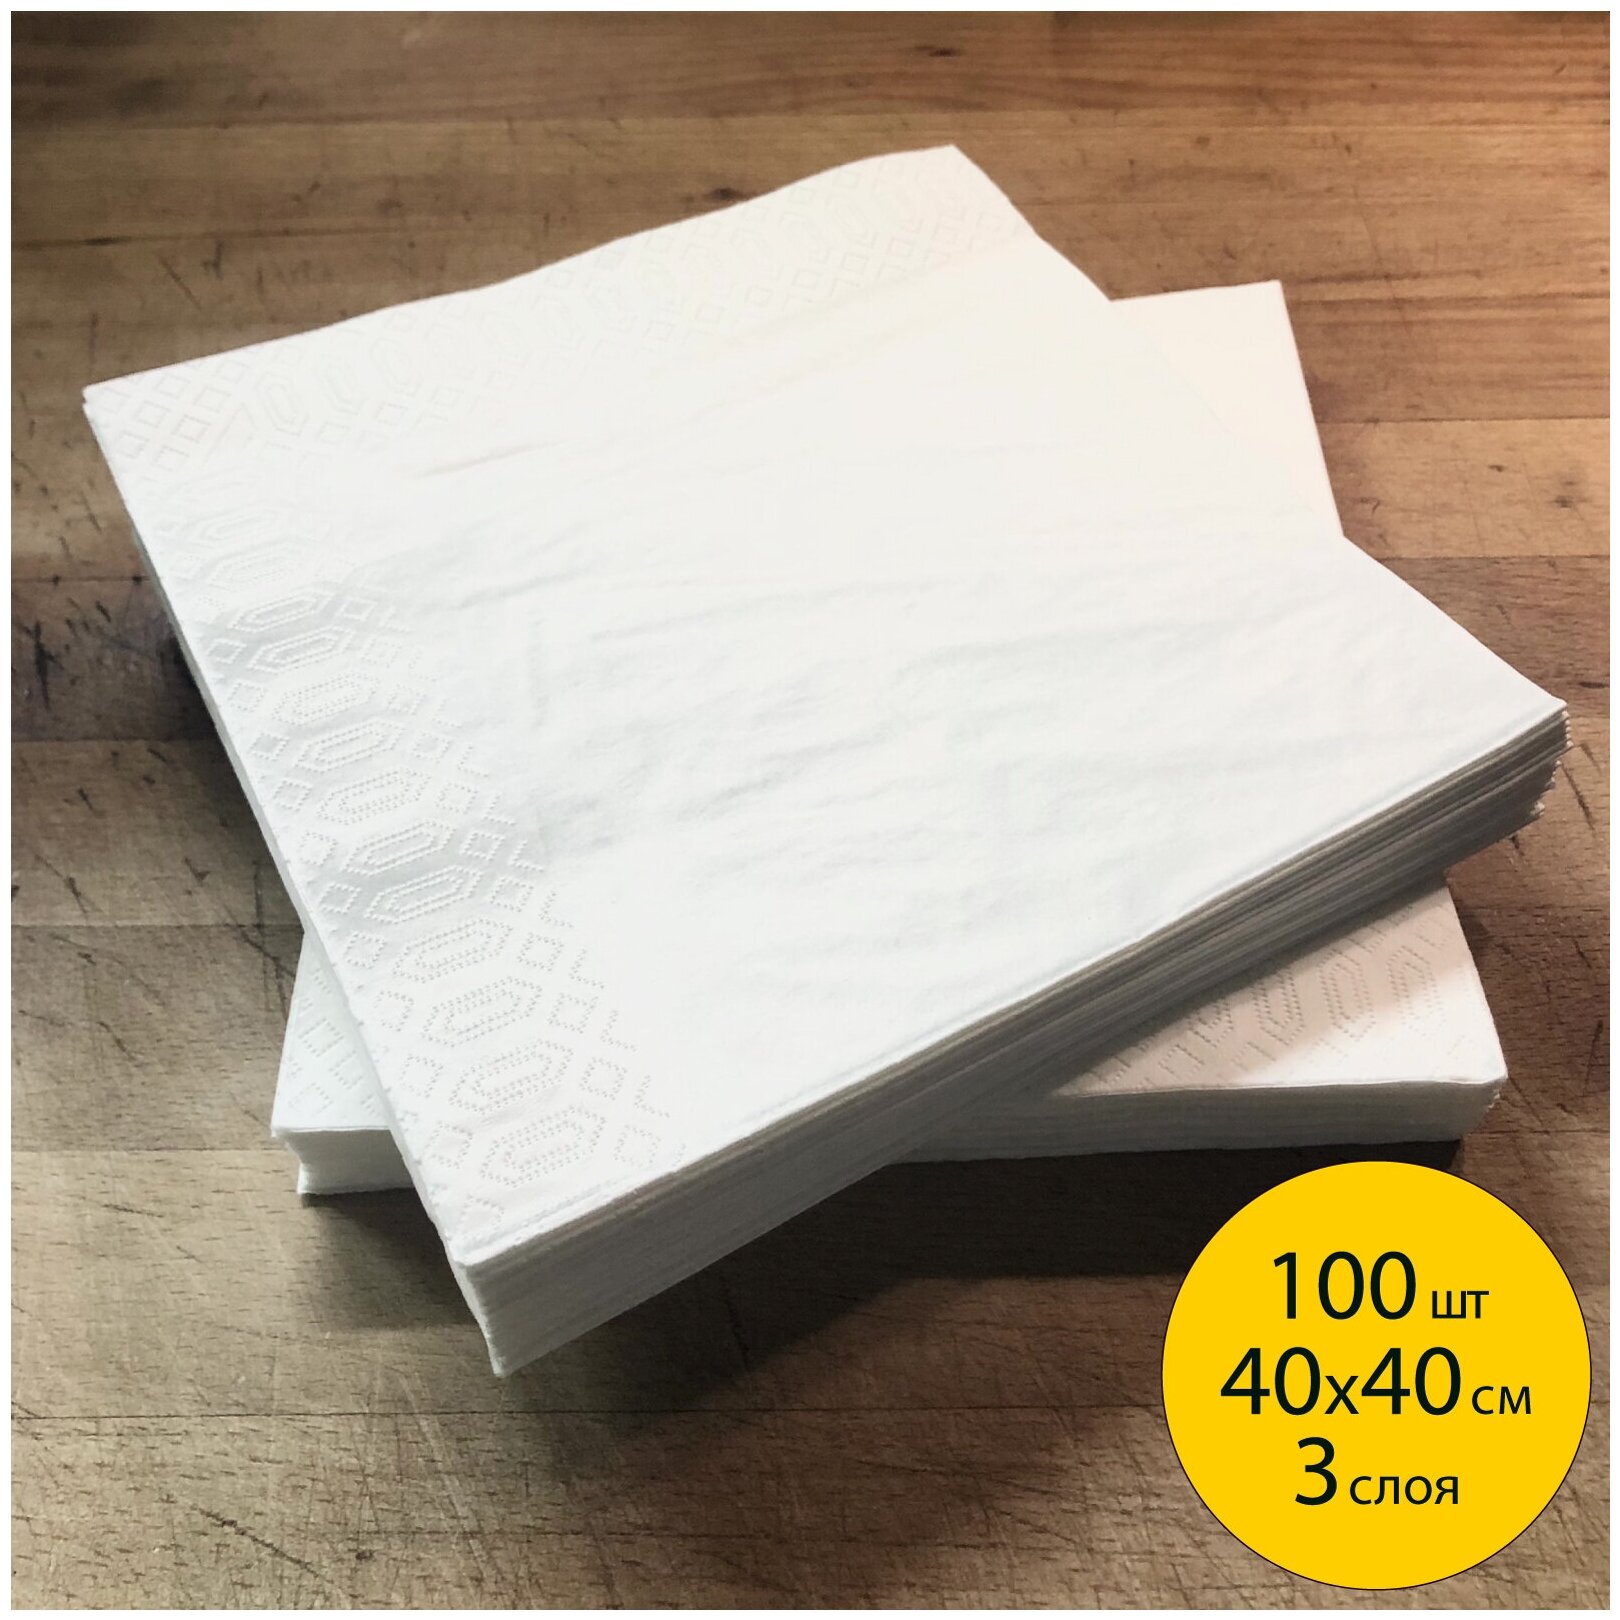 Салфетки бумажные трёхслойные для сервировки стола KITCHN 40*40 см 100 шт/пачка сложены 20*20 см однотонные белые Premium